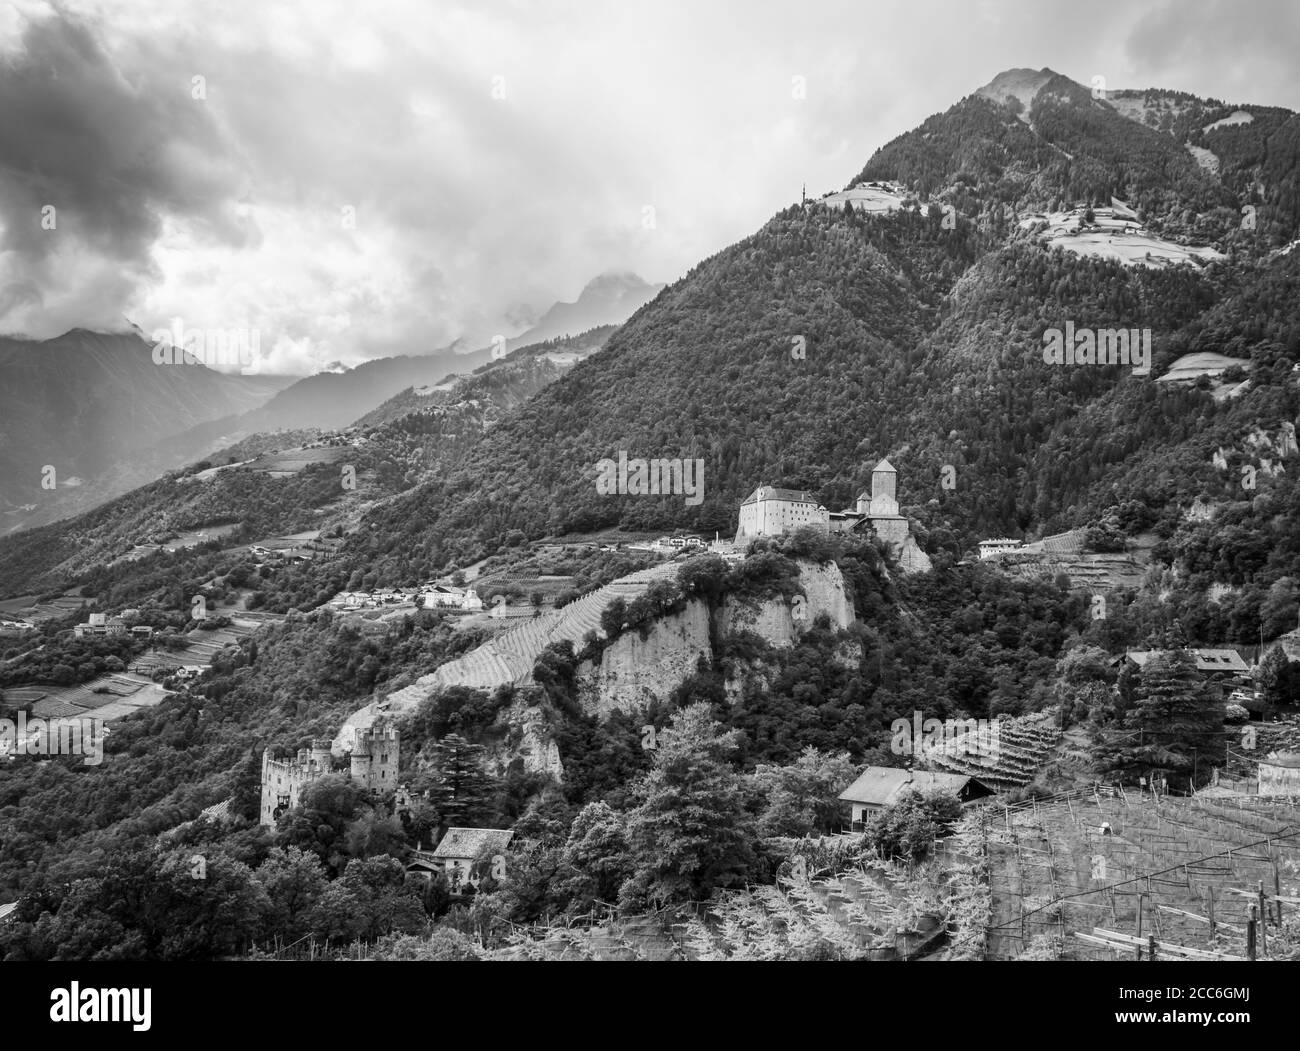 Castello Tirolo e Castello Fontana con sullo sfondo la Val Venosta, Merano, Trentino Alto Adige, italia settentrionale - Europa. Immagine in bianco e nero Foto Stock